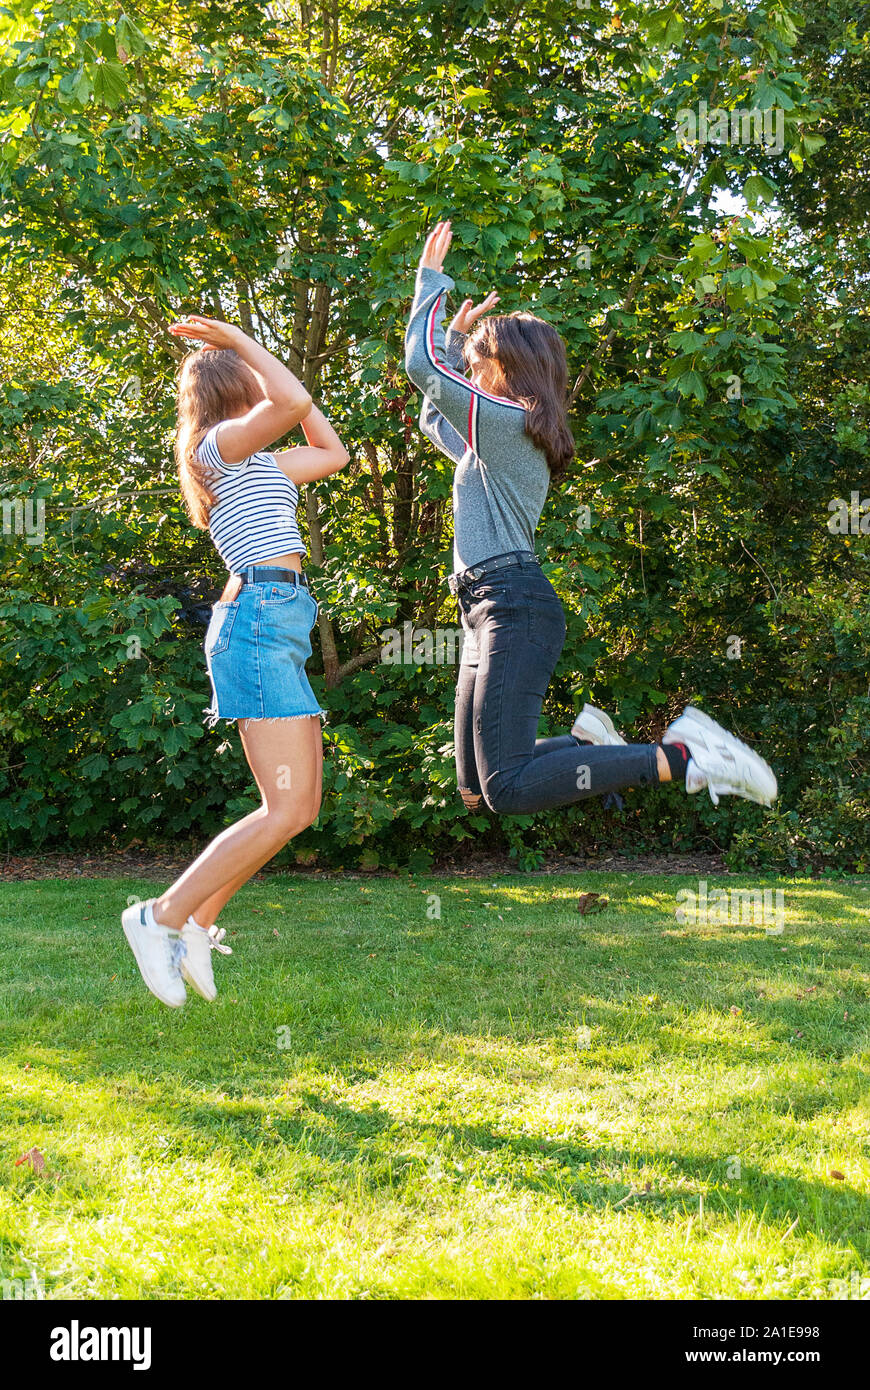 Zwei jugendliche Mädchen springen in einem Park im Sommer. Spaß haben im Urlaub. Gerne Freunde Zeit miteinander zu verbringen. Freundschaft. Stockfoto